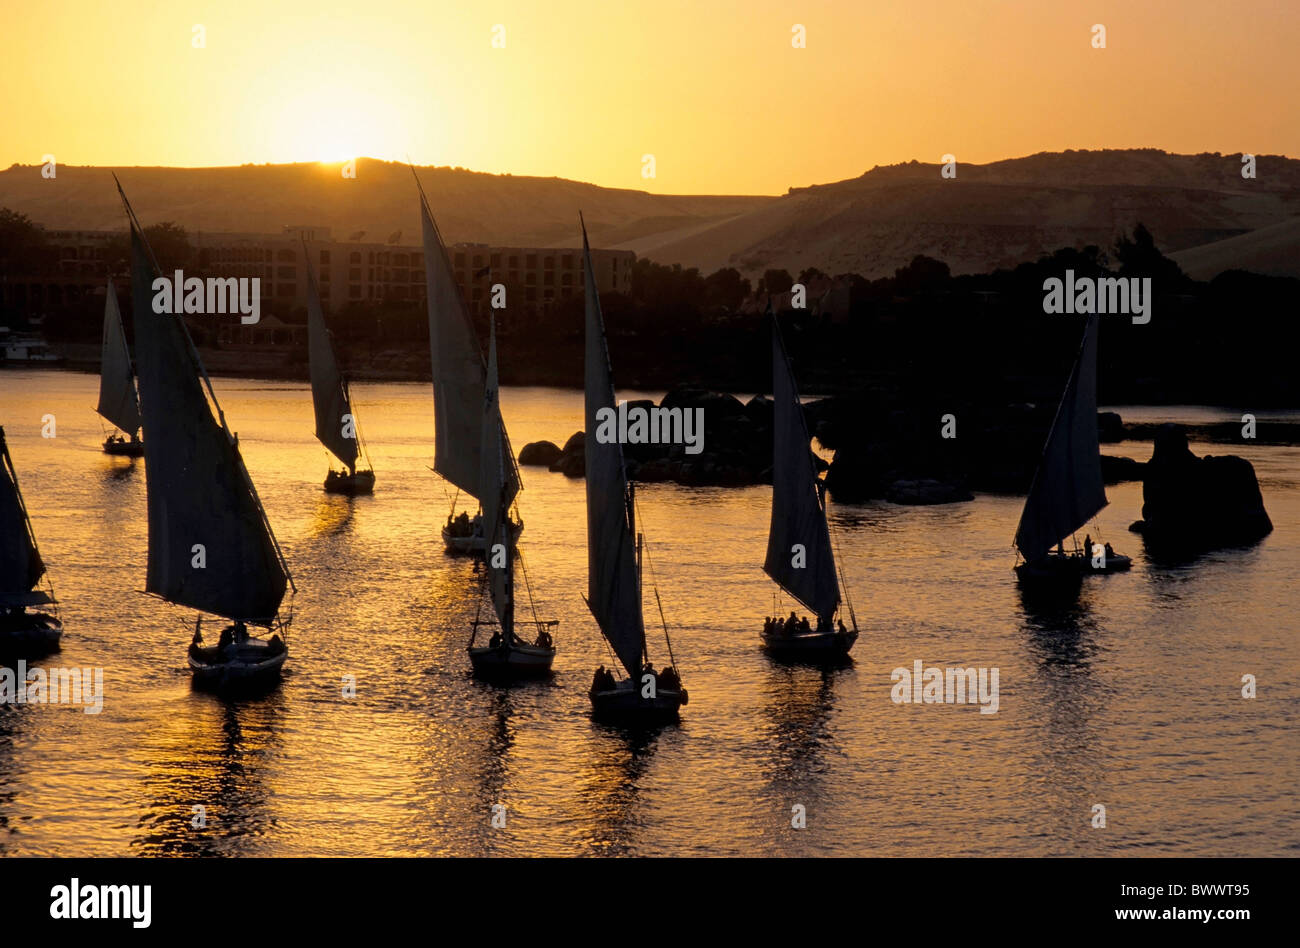 Fiume Nilo in Egitto - feluche navigando sul fiume Nilo al tramonto / Crepuscolo, Aswan, Egitto. Foto Stock